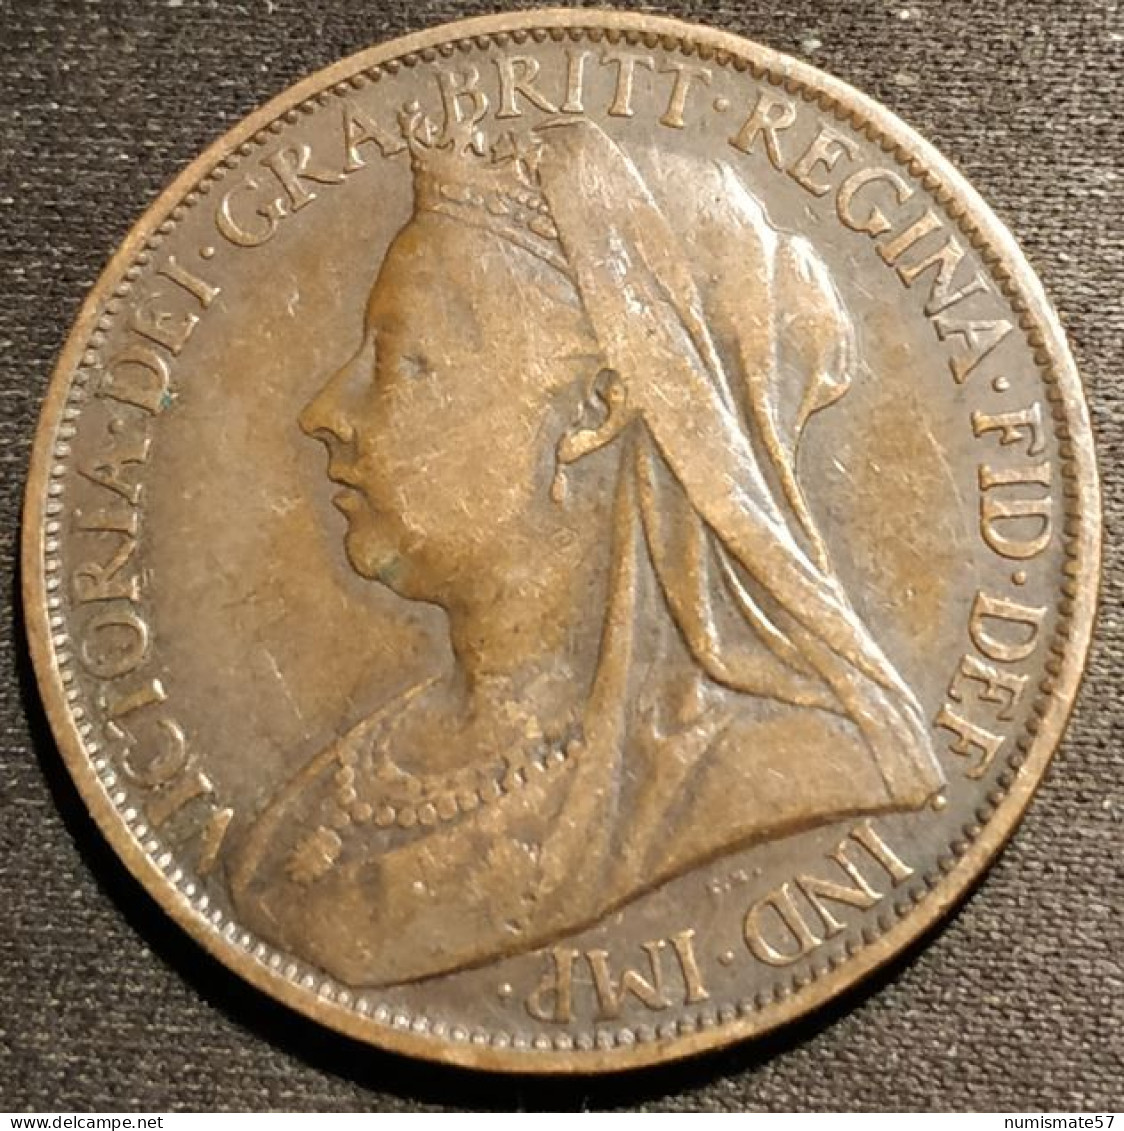 GRANDE BRETAGNE - ONE PENNY 1897 - Victoria - KM 790 - ( Great Britain ) - D. 1 Penny